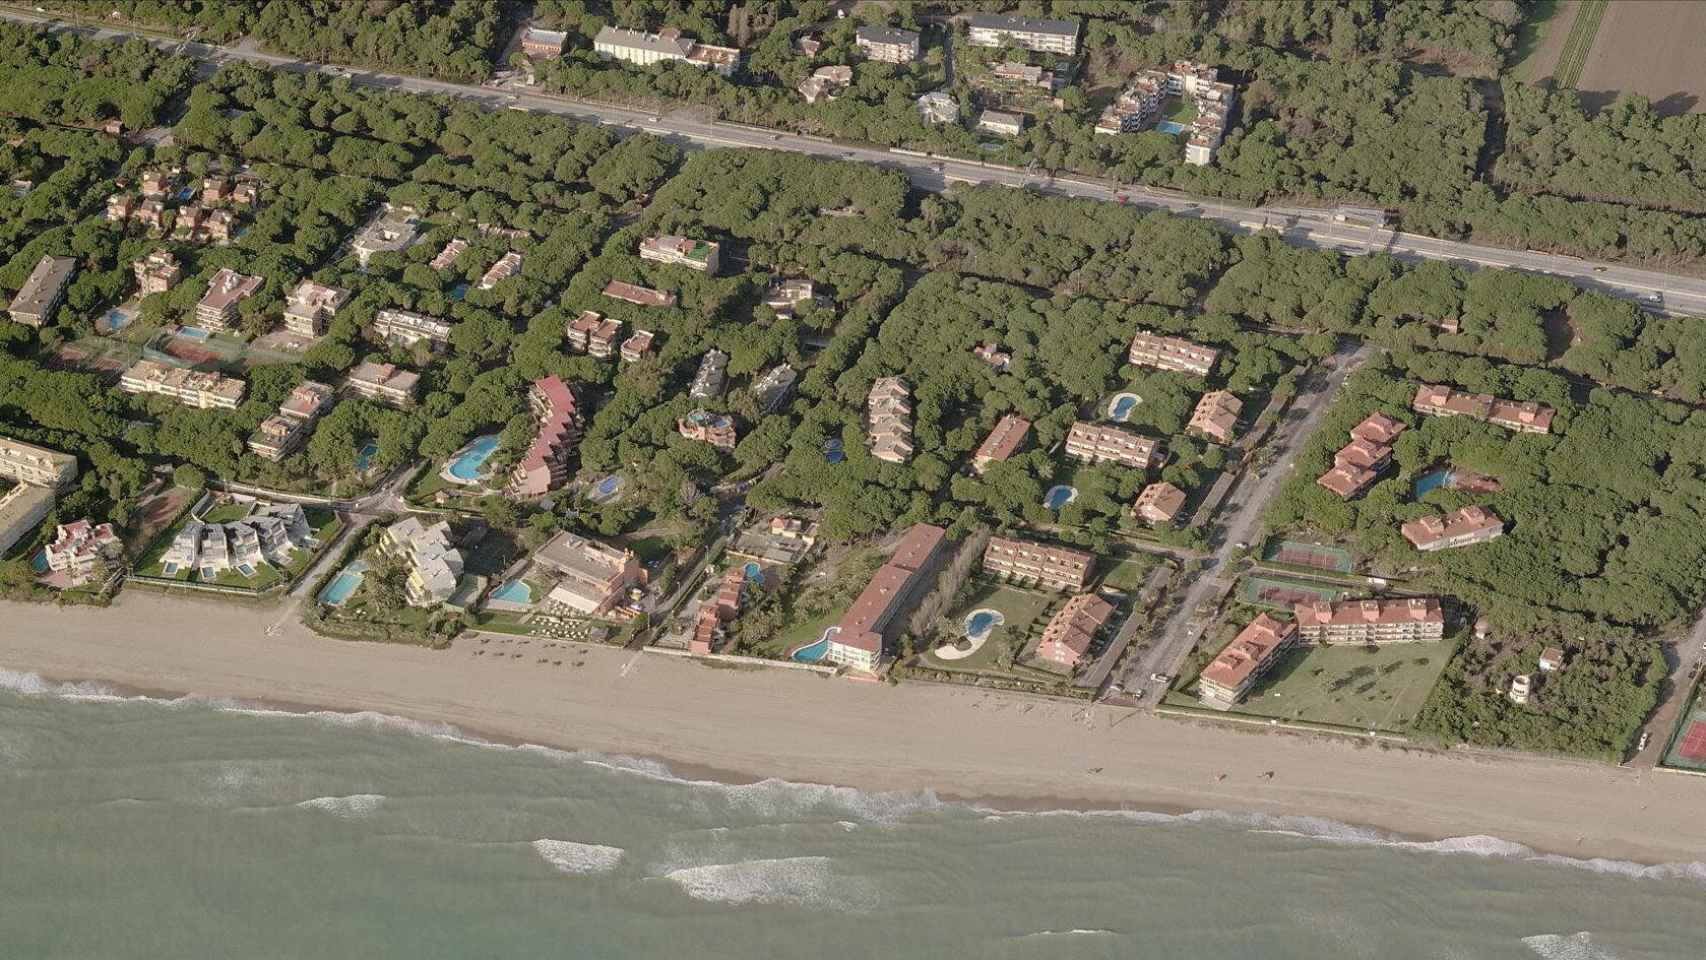 Vista aérea de parte de la urbanización Gavà Mar.